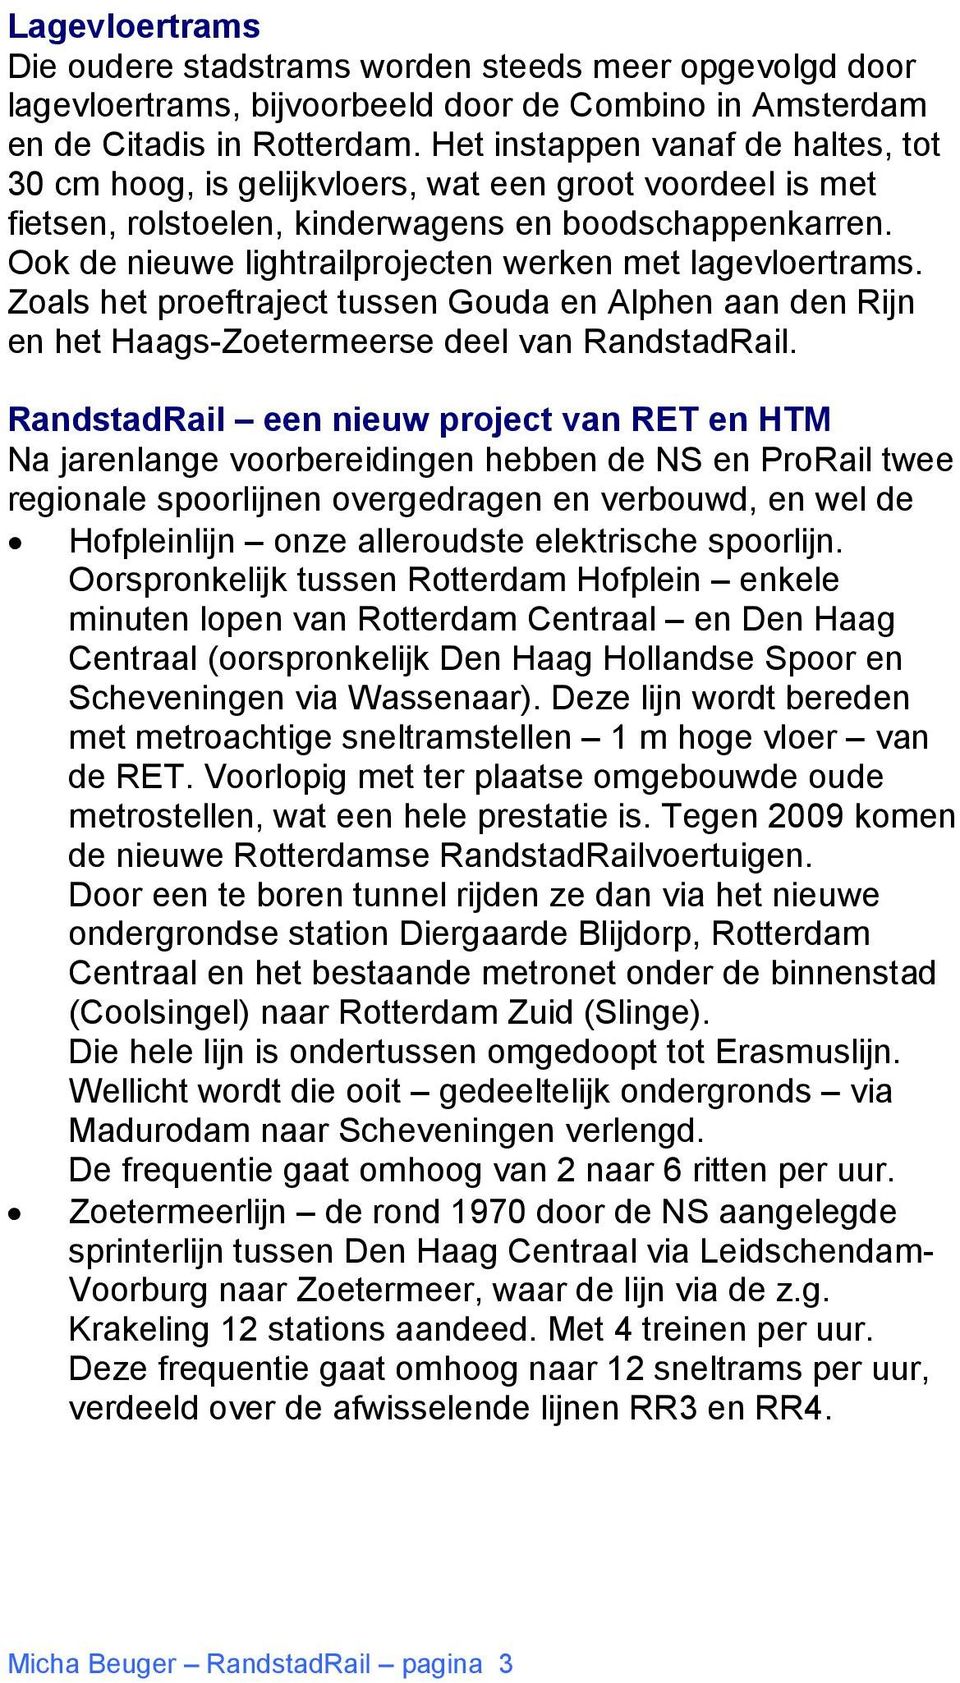 Ook de nieuwe lightrailprojecten werken met lagevloertrams. Zoals het proeftraject tussen Gouda en Alphen aan den Rijn en het Haags-Zoetermeerse deel van RandstadRail.